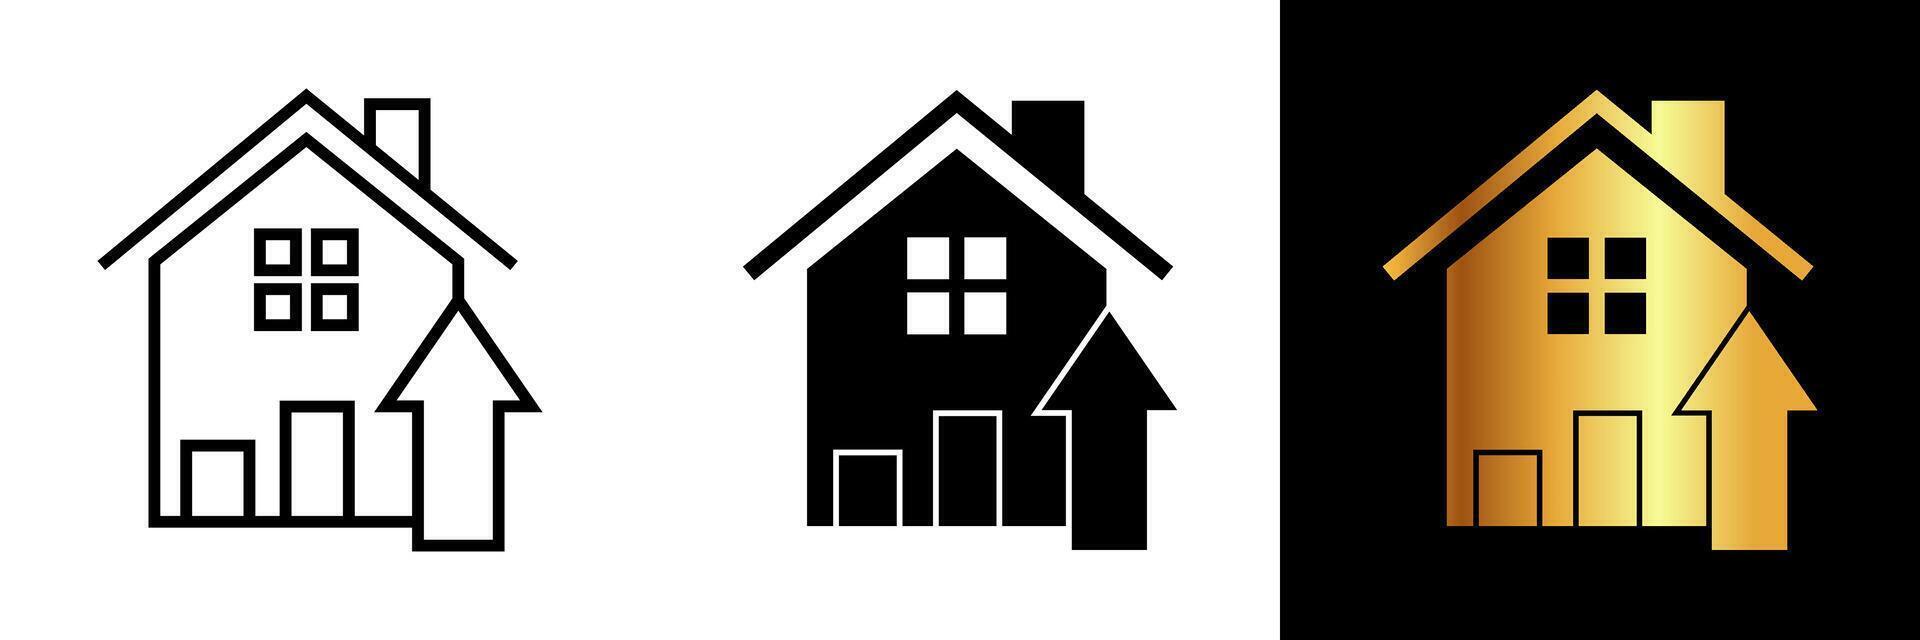 de huis omhoog pijl icoon combineert de symbolisch vertegenwoordiging van een huis met de directioneel naar boven pijl, overbrengen de concept van voortgang, verbetering, en verhoogd leven. vector